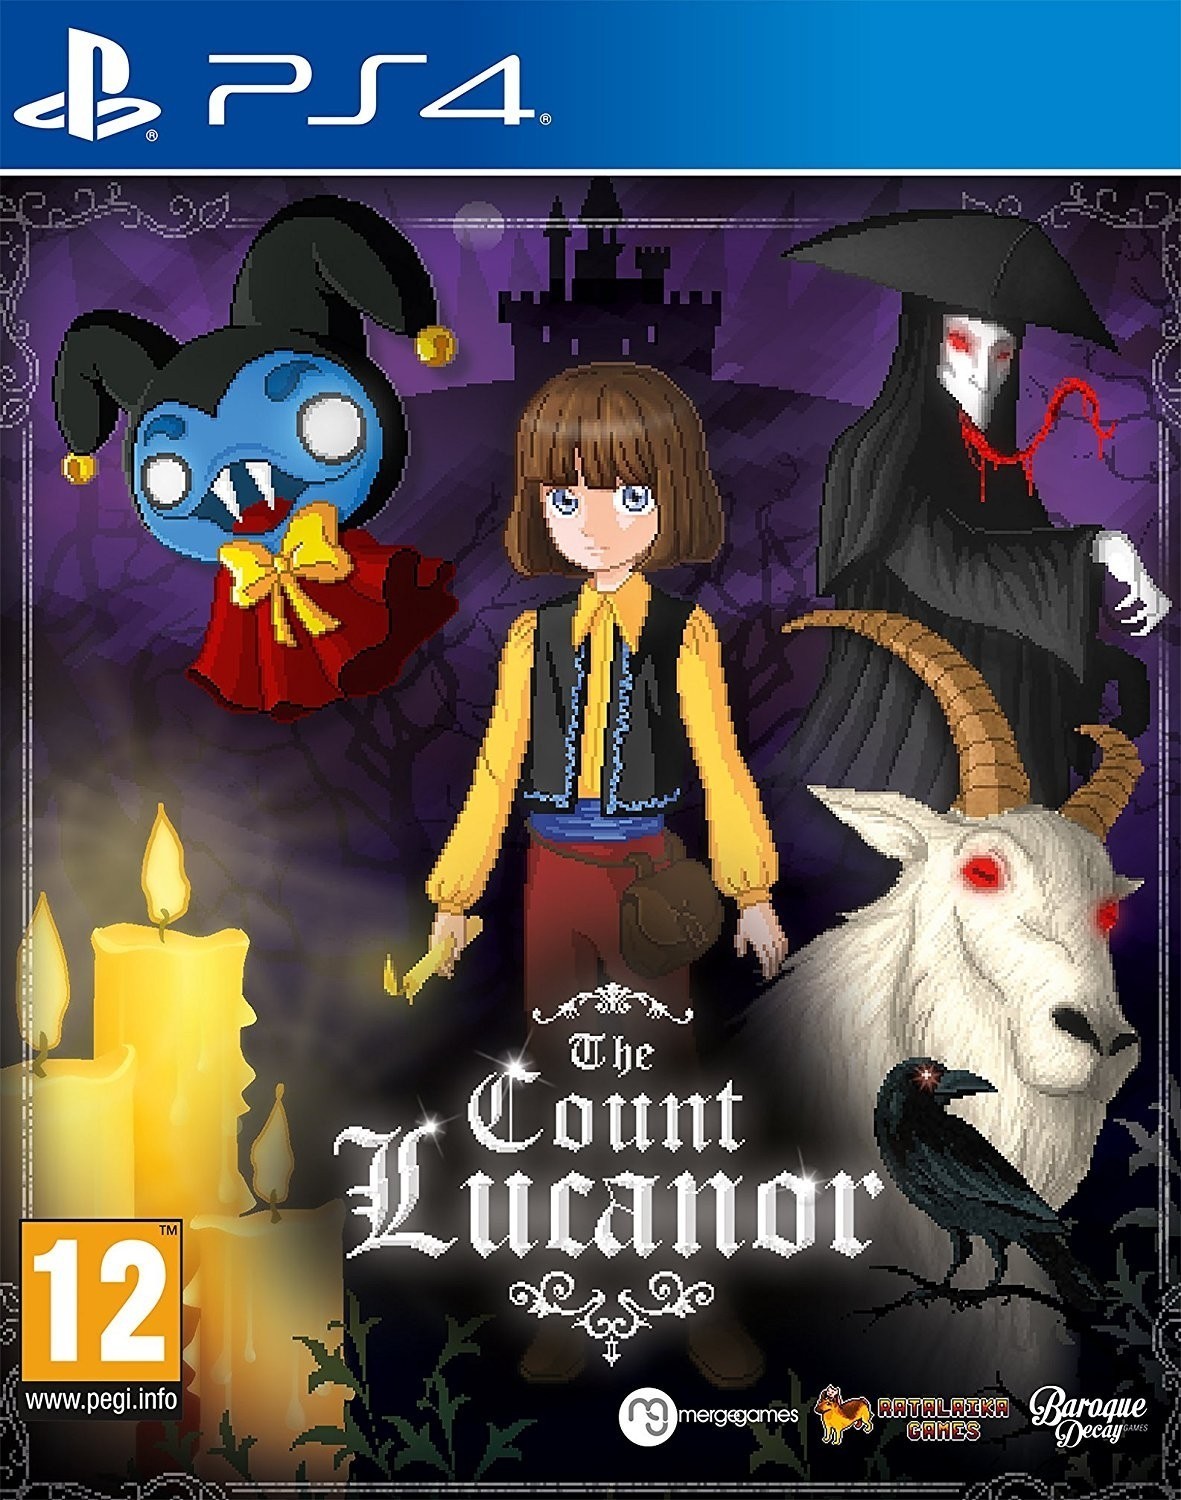 jaquette du jeu vidéo The Count Lucanor